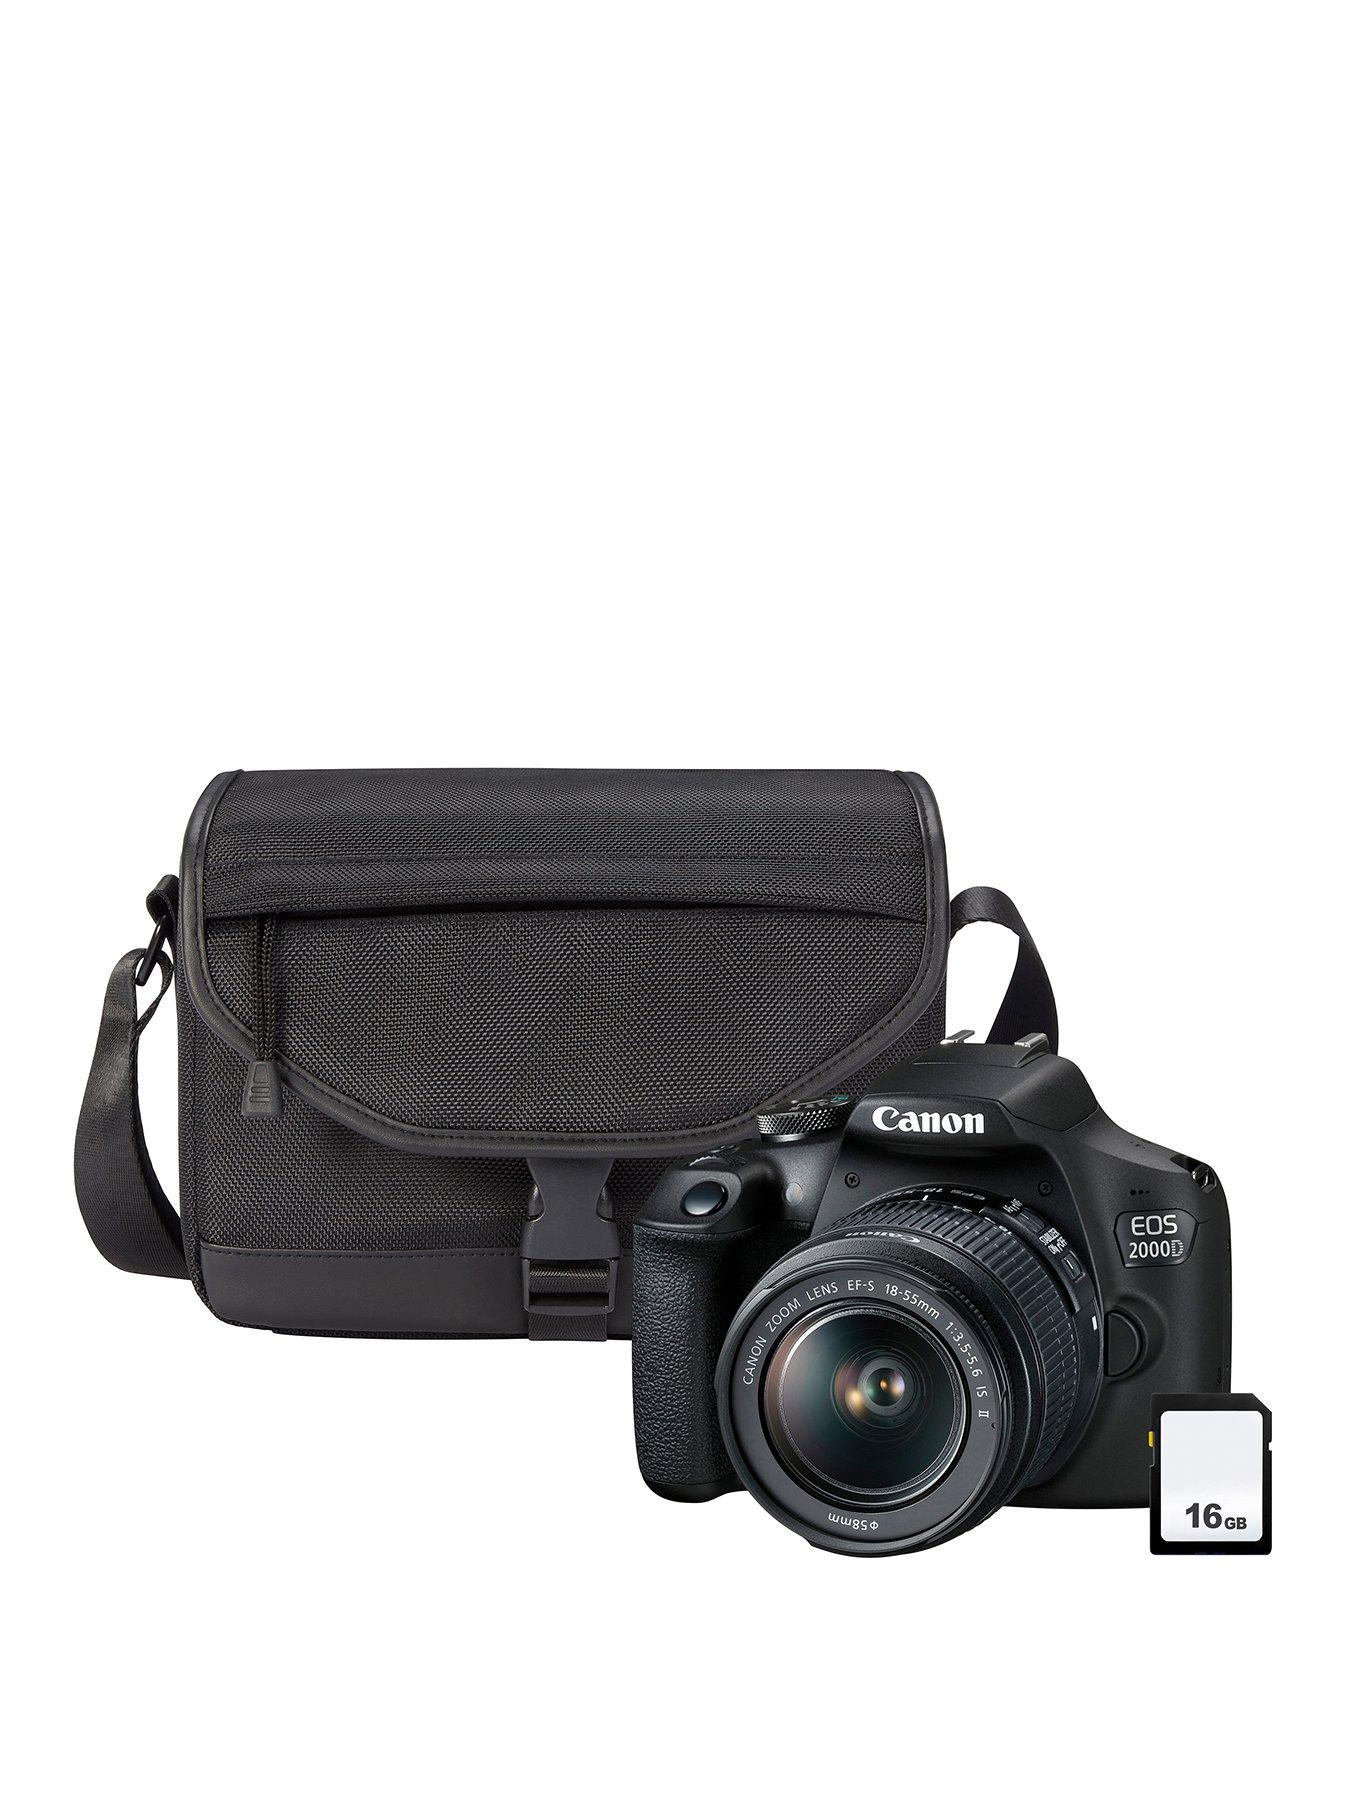 Canon EOS 2000D DSLR Camera + EF-S 18-55mm IS Lens + SB130 Shoulder Bag +  16GB Memory Card Kit - Black